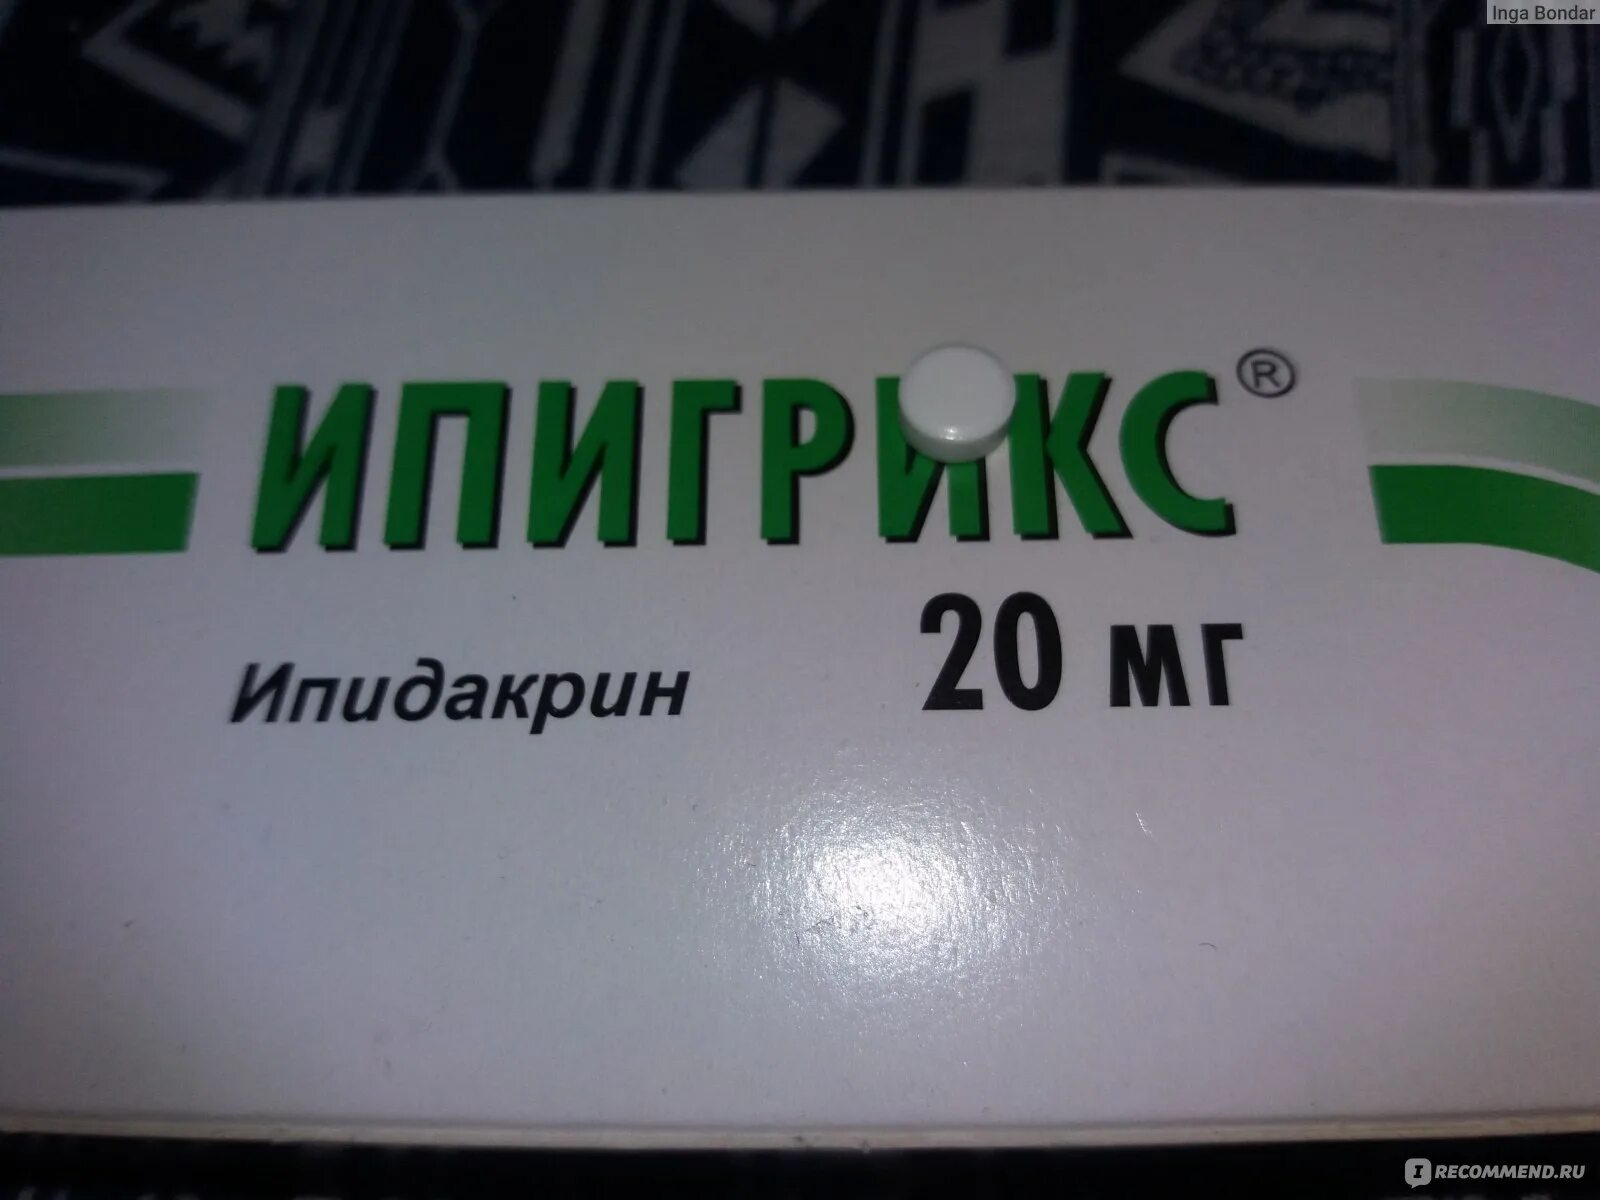 Ипигрикс 20 мг. Ипидакрин 15 vu. Ипидакрин 15 мг ампулы. Ипидакрин Ипигрикс. Инструкция уколов ипигрикс